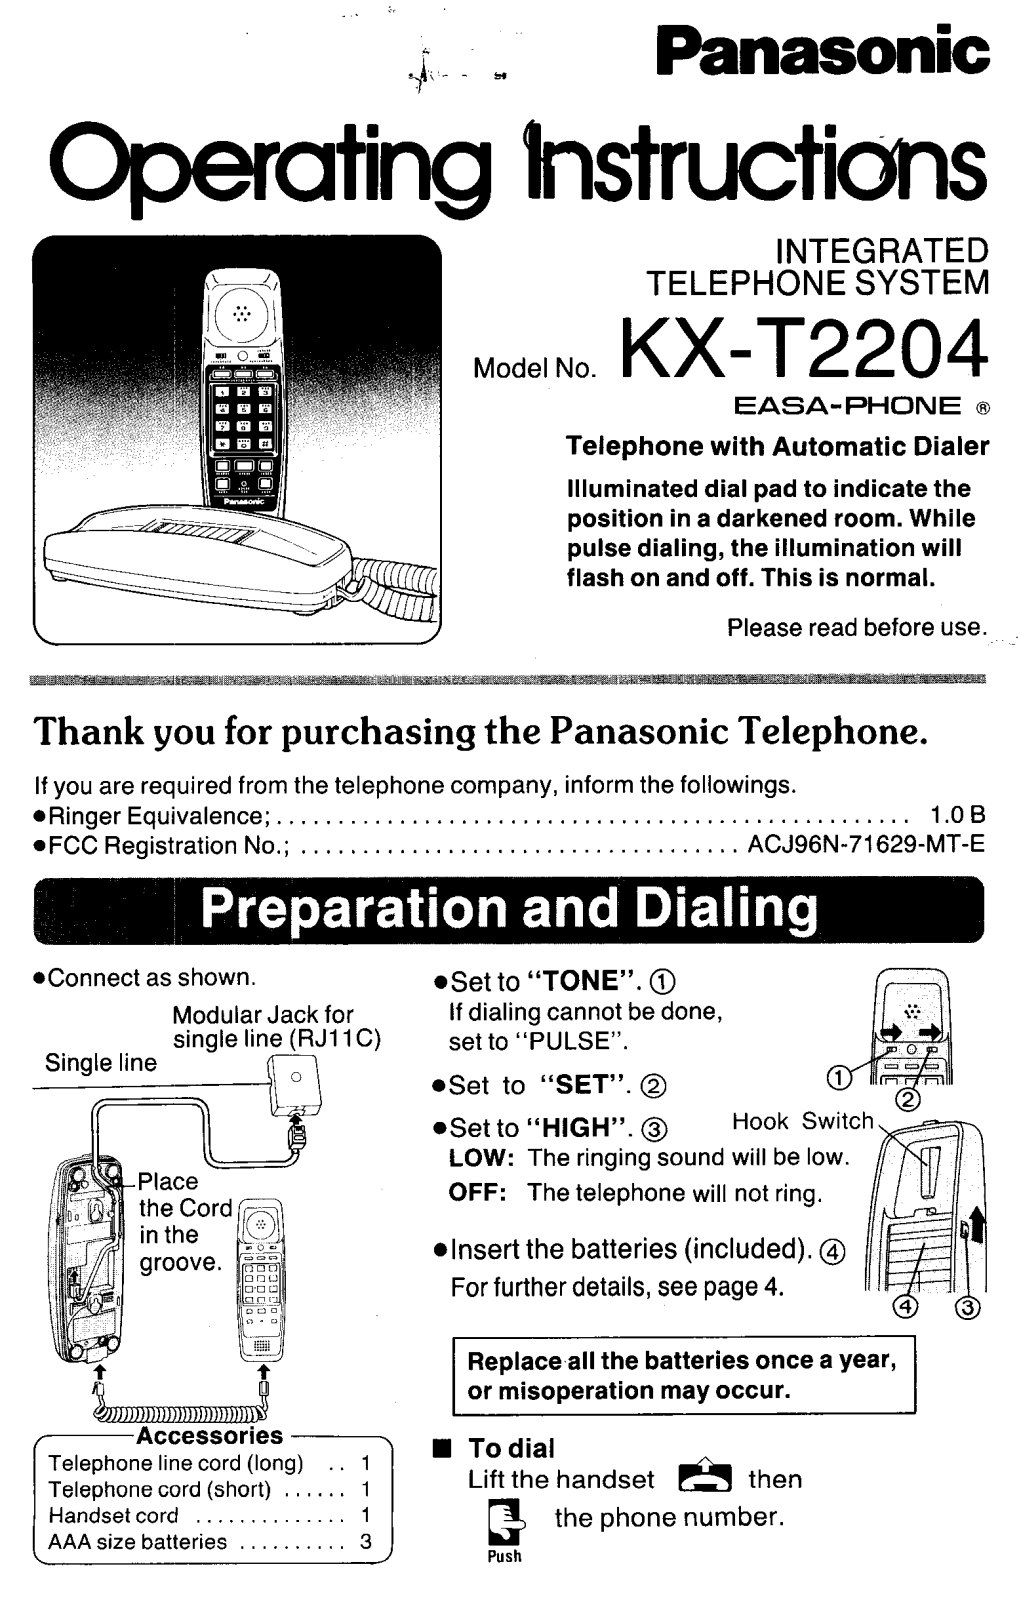 Panasonic kx-t2204 Operation Manual